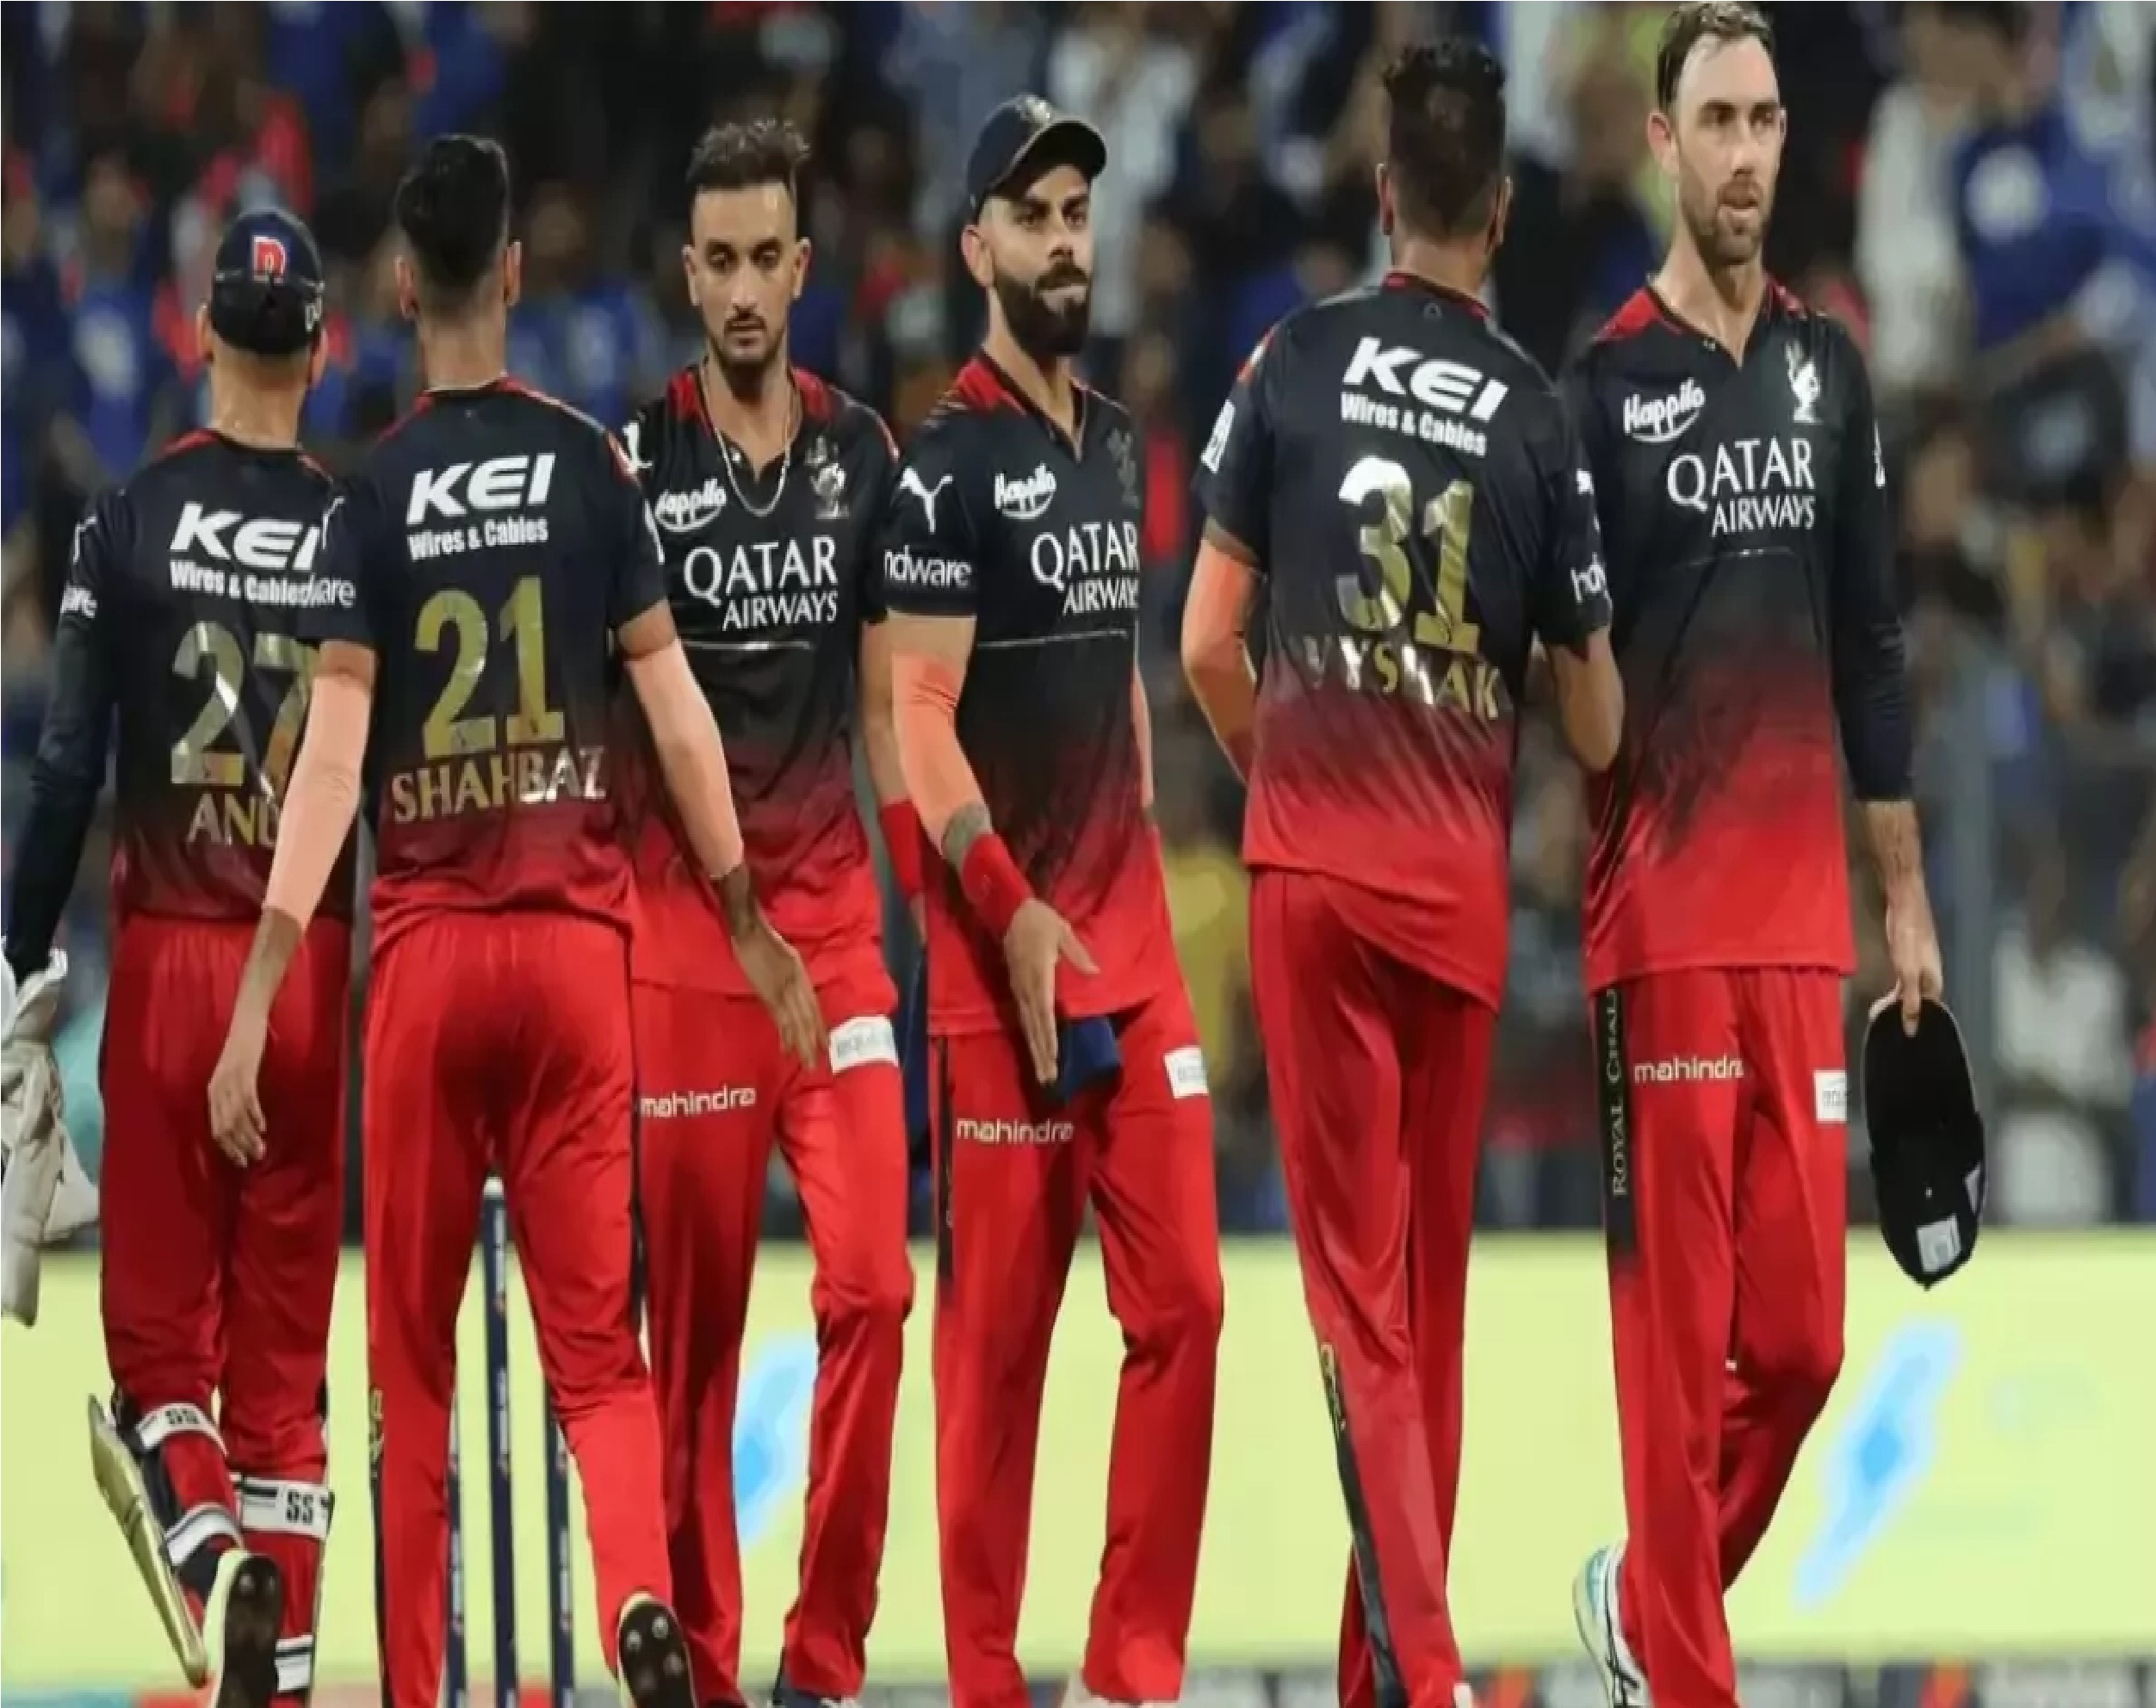 New Delhi: केकेआर के खिलाफ मुकाबले से पहले आरसीबी को लगा झटका, धांसू बैटर हुआ आईपीएल से बाहर